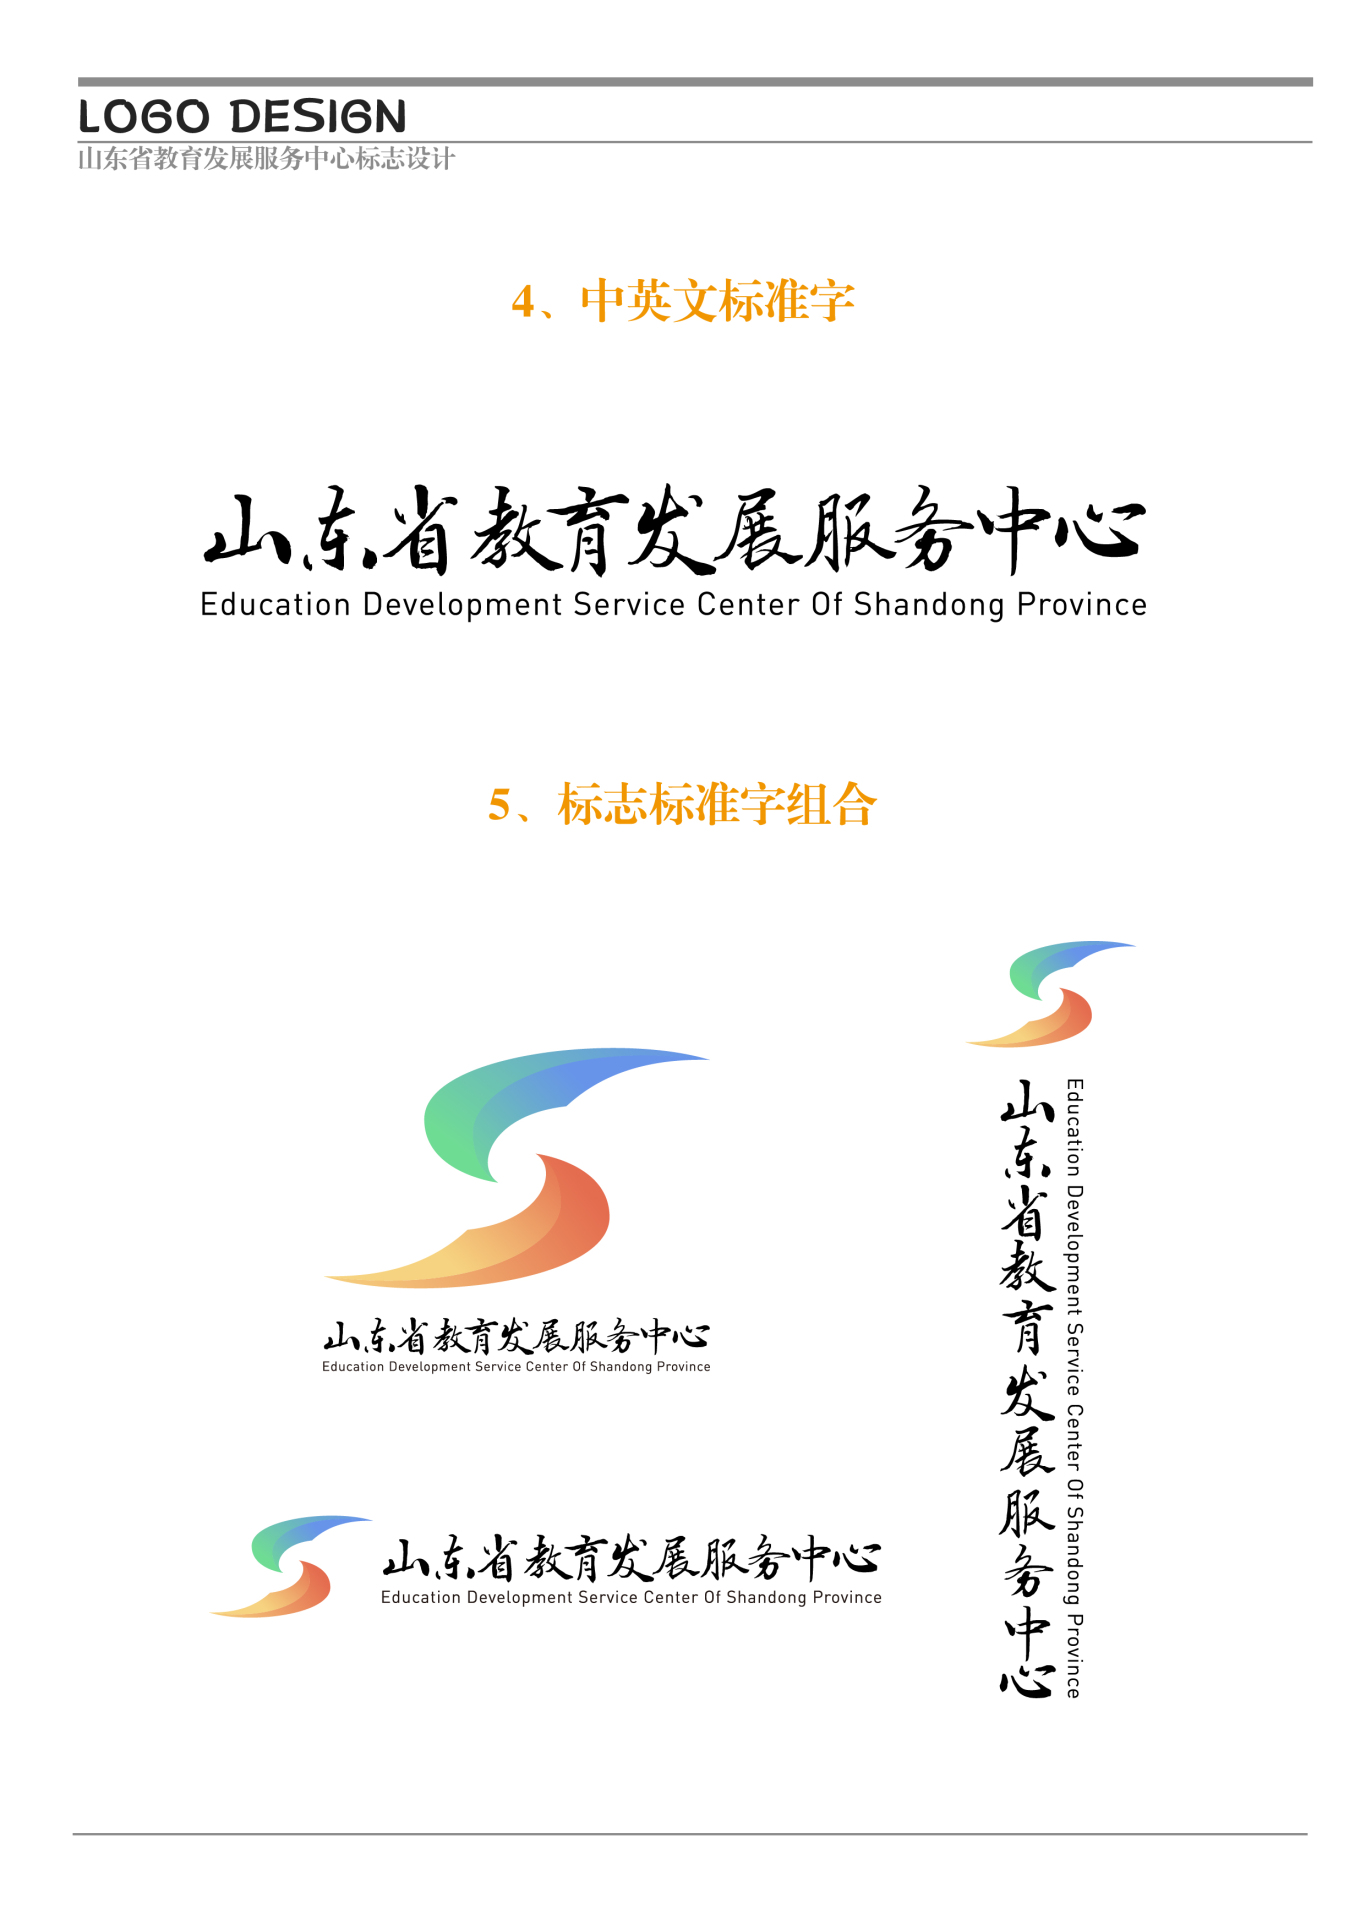 山东省教育发展服务中心logo设计图2